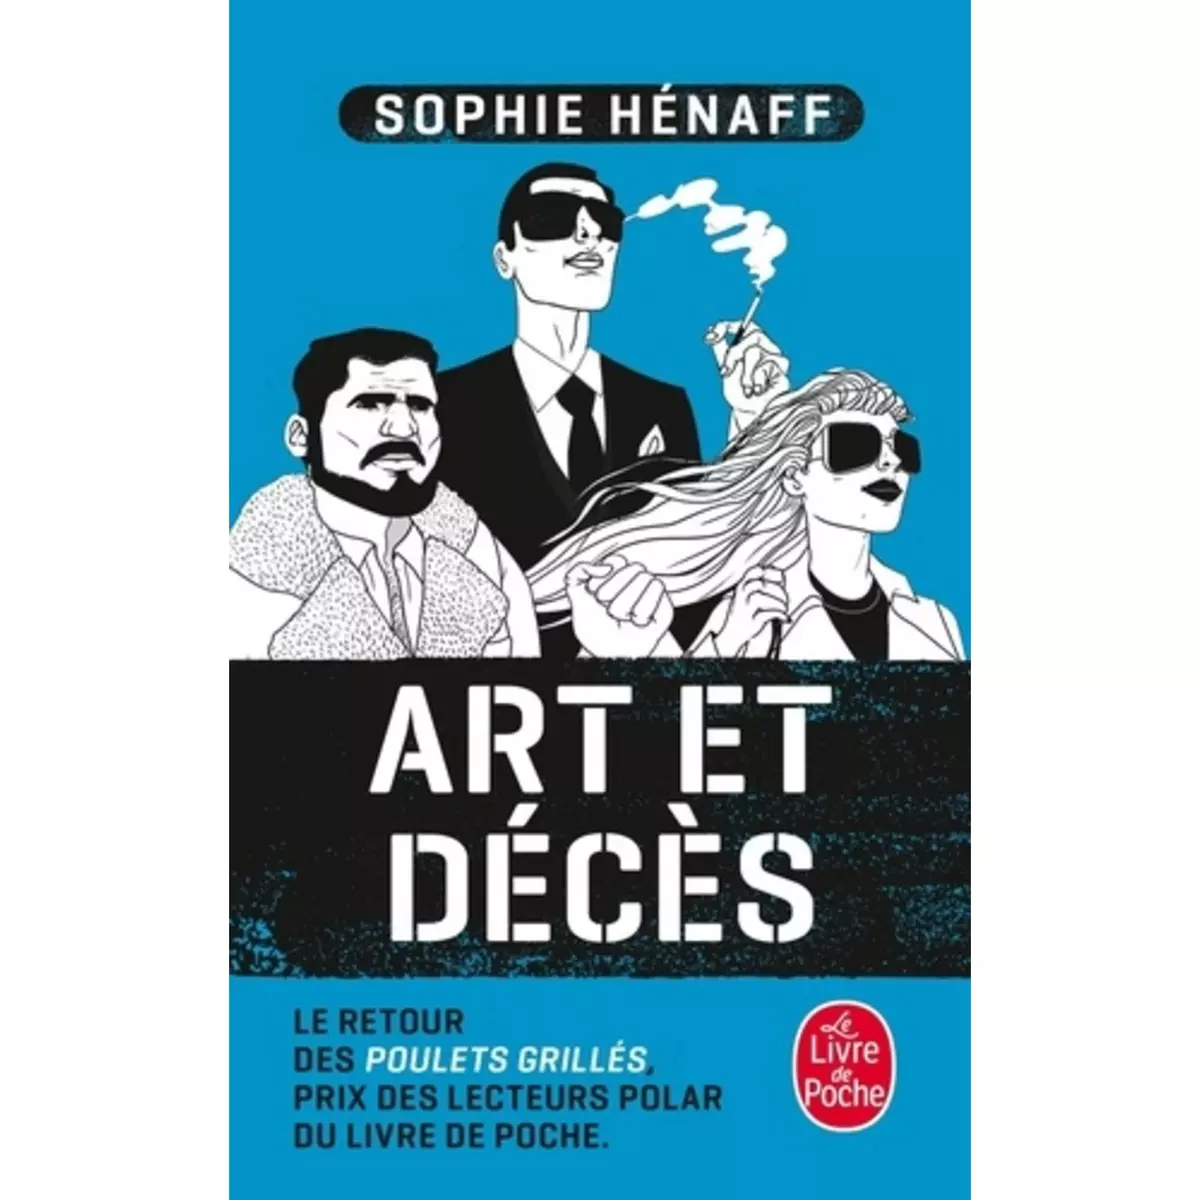  ART ET DECES, Hénaff Sophie